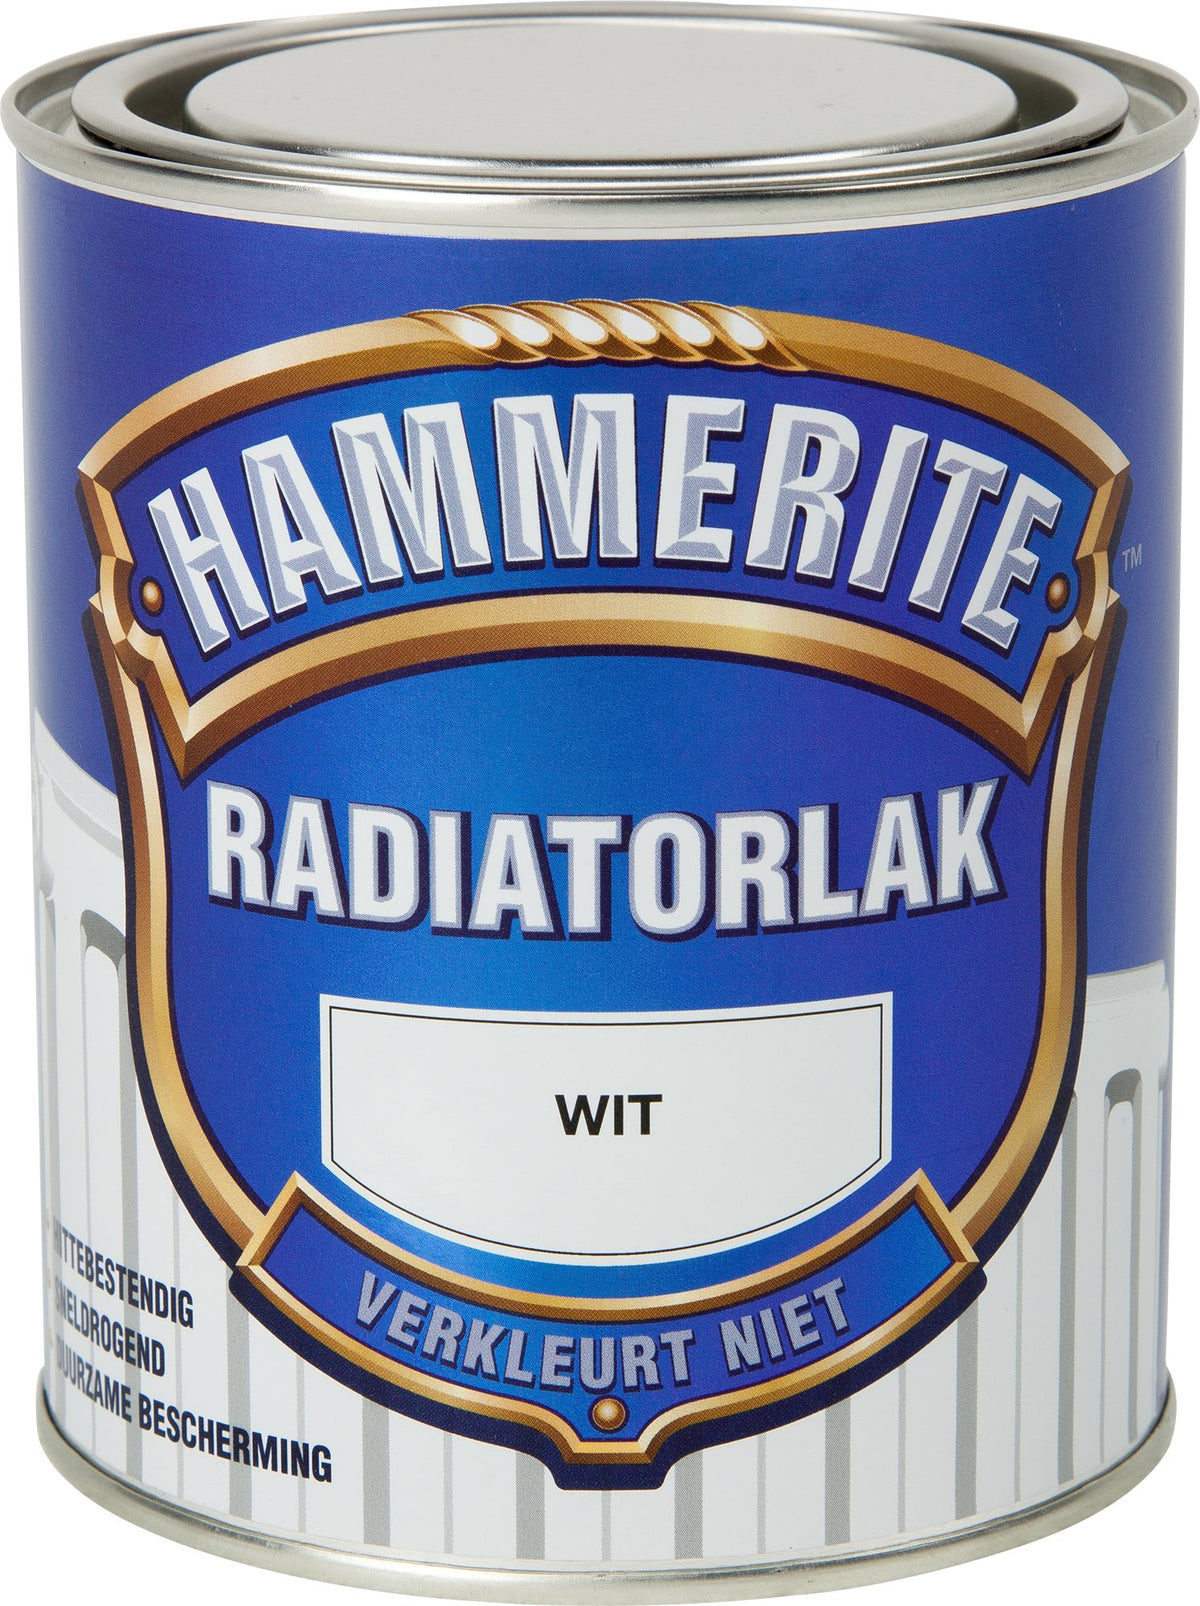 Hammerite radiatorlak wit 750ml